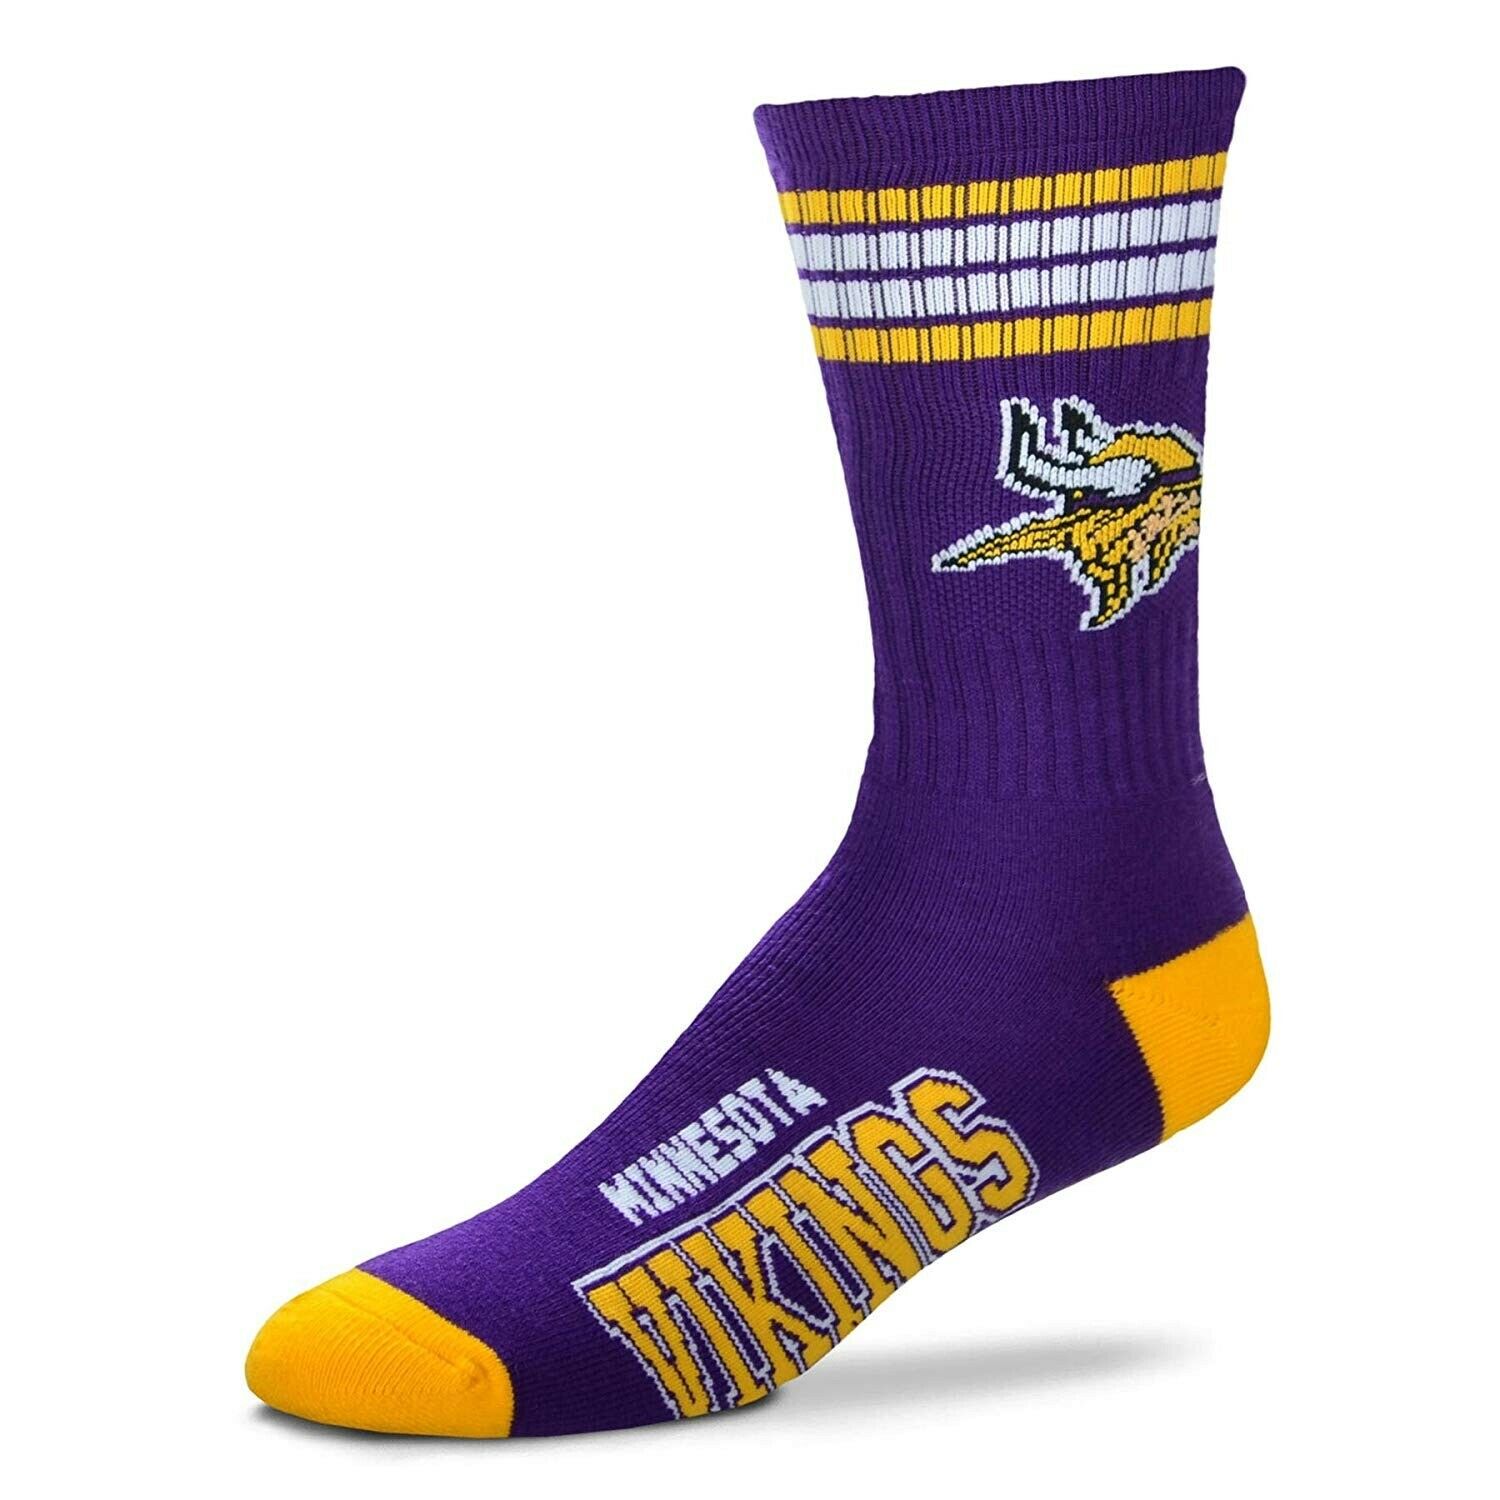 Minnesota Vikings Socks Crew Length Large Size Mens 10-13 Shoe NEW! Stripes